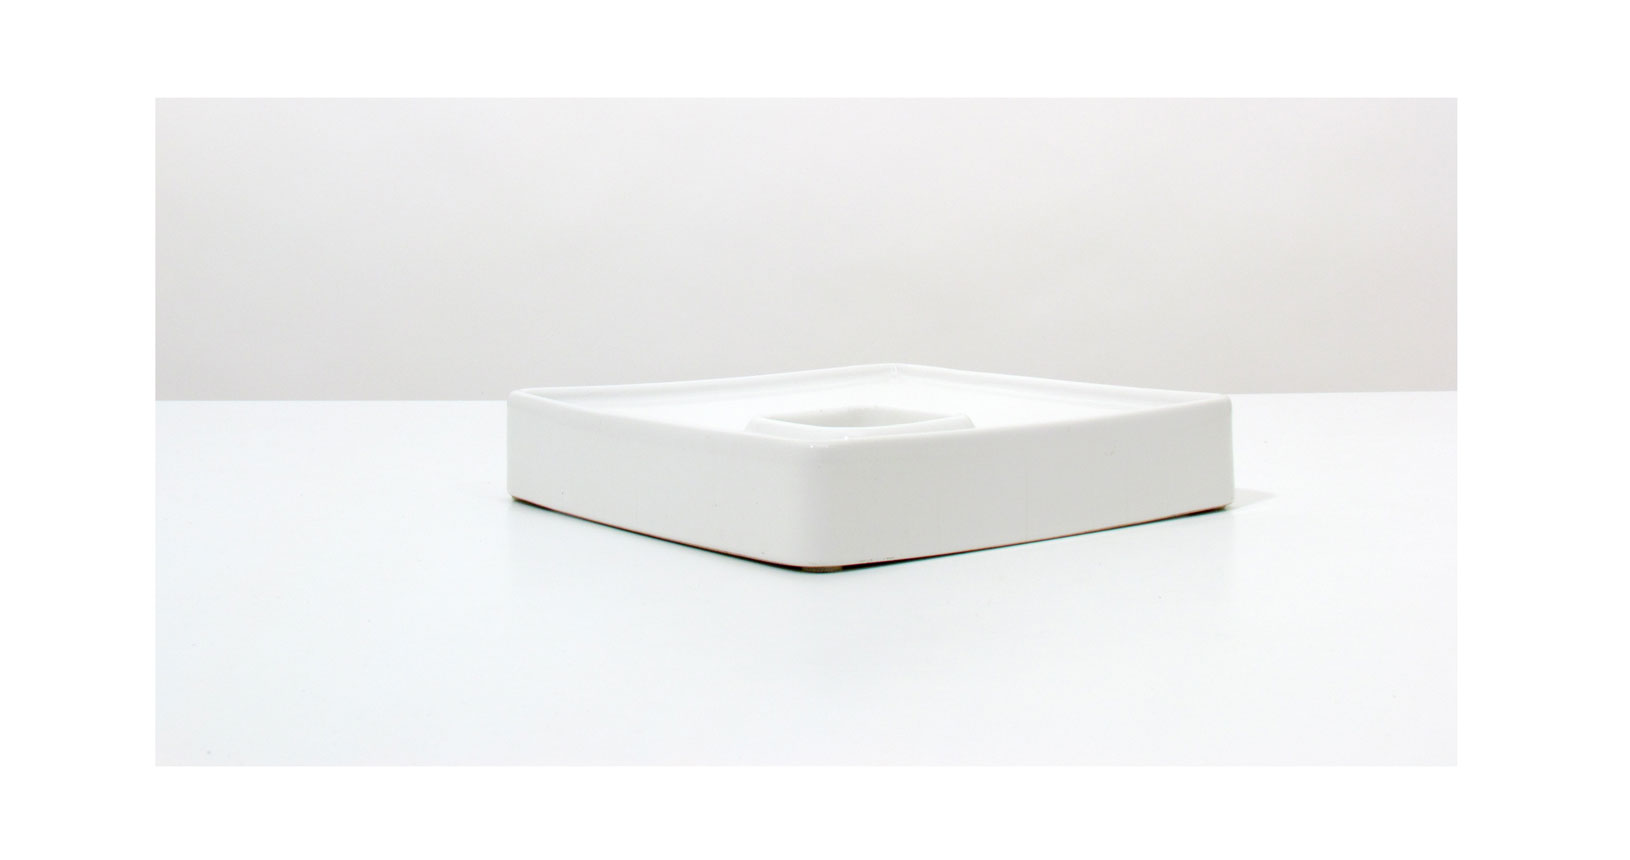 brambilla bianco white posacenere ashtray ceramica design vintage iconic design furniture